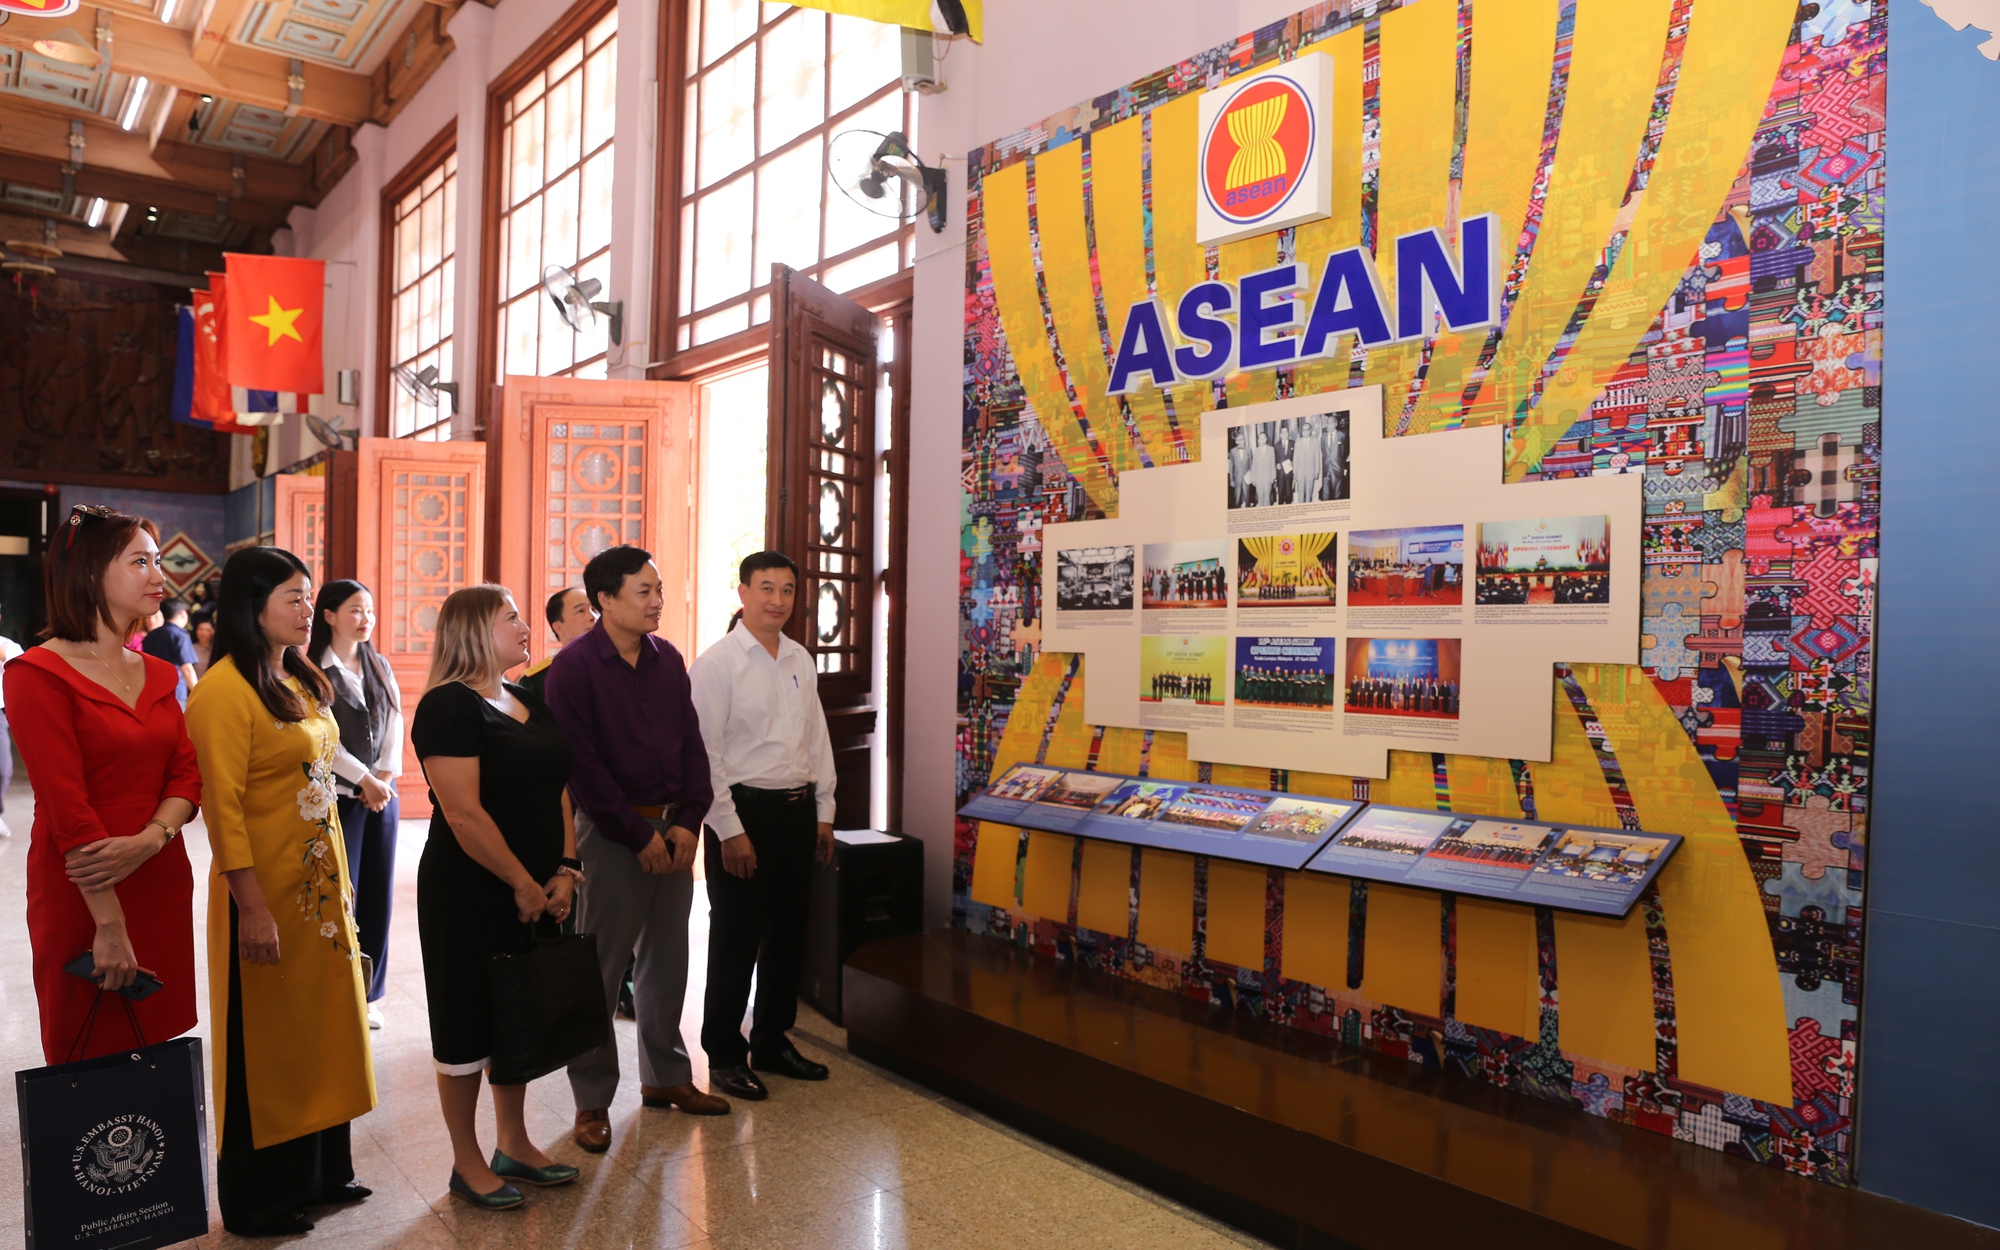 Xây dựng thương hiệu, sản phẩm dịch vụ văn hóa đặc trưng của Bảo tàng Văn hóa các dân tộc Việt Nam - Ảnh 1.